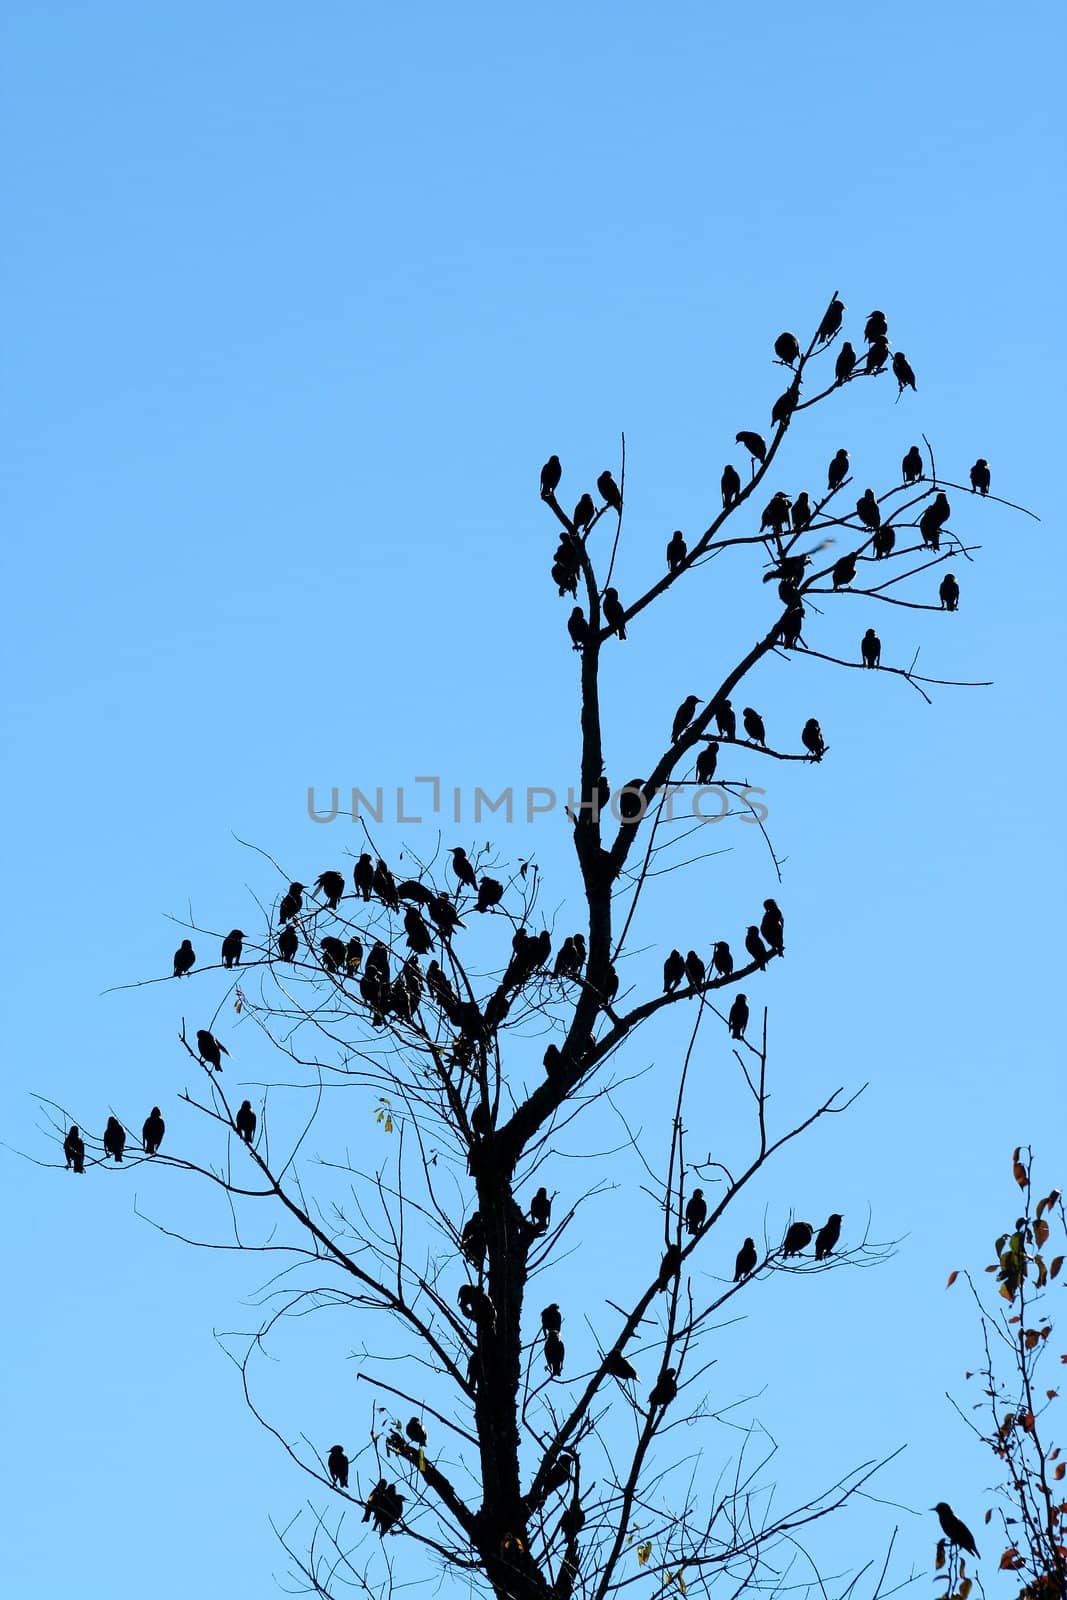 Flock of birdsin a tree